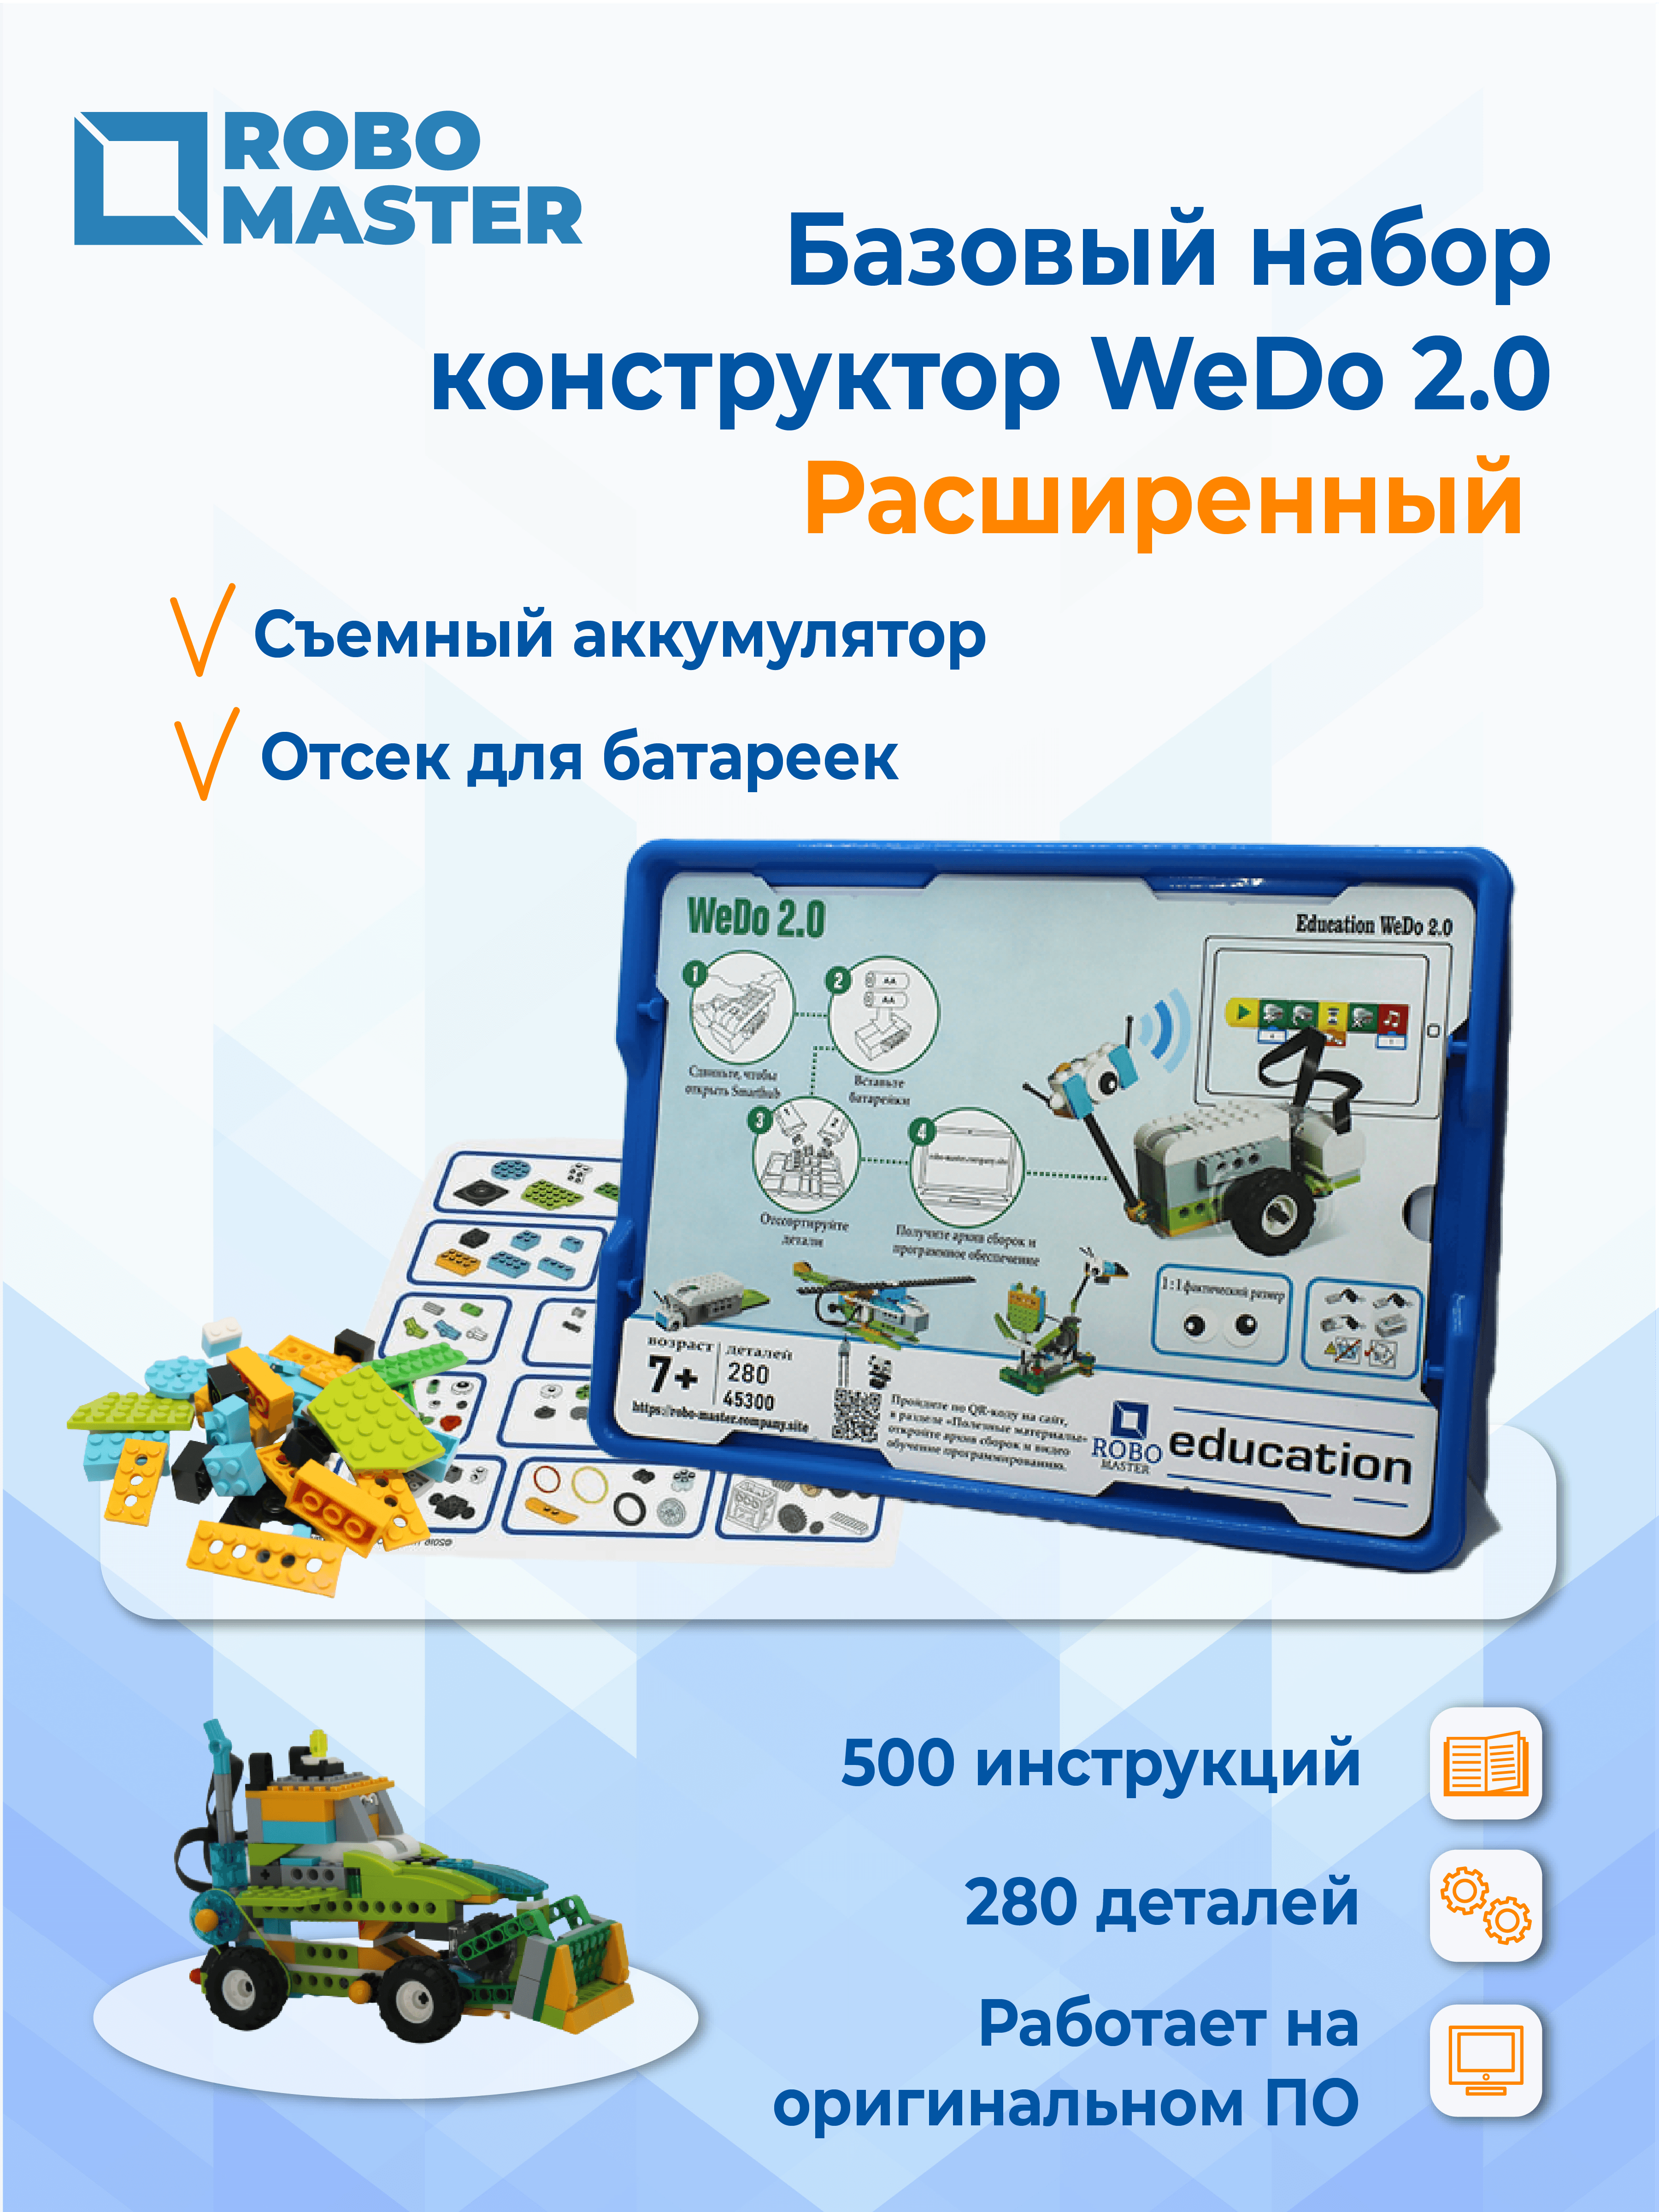 Базовый набор WeDo 2.0 расширенный (Аналог)